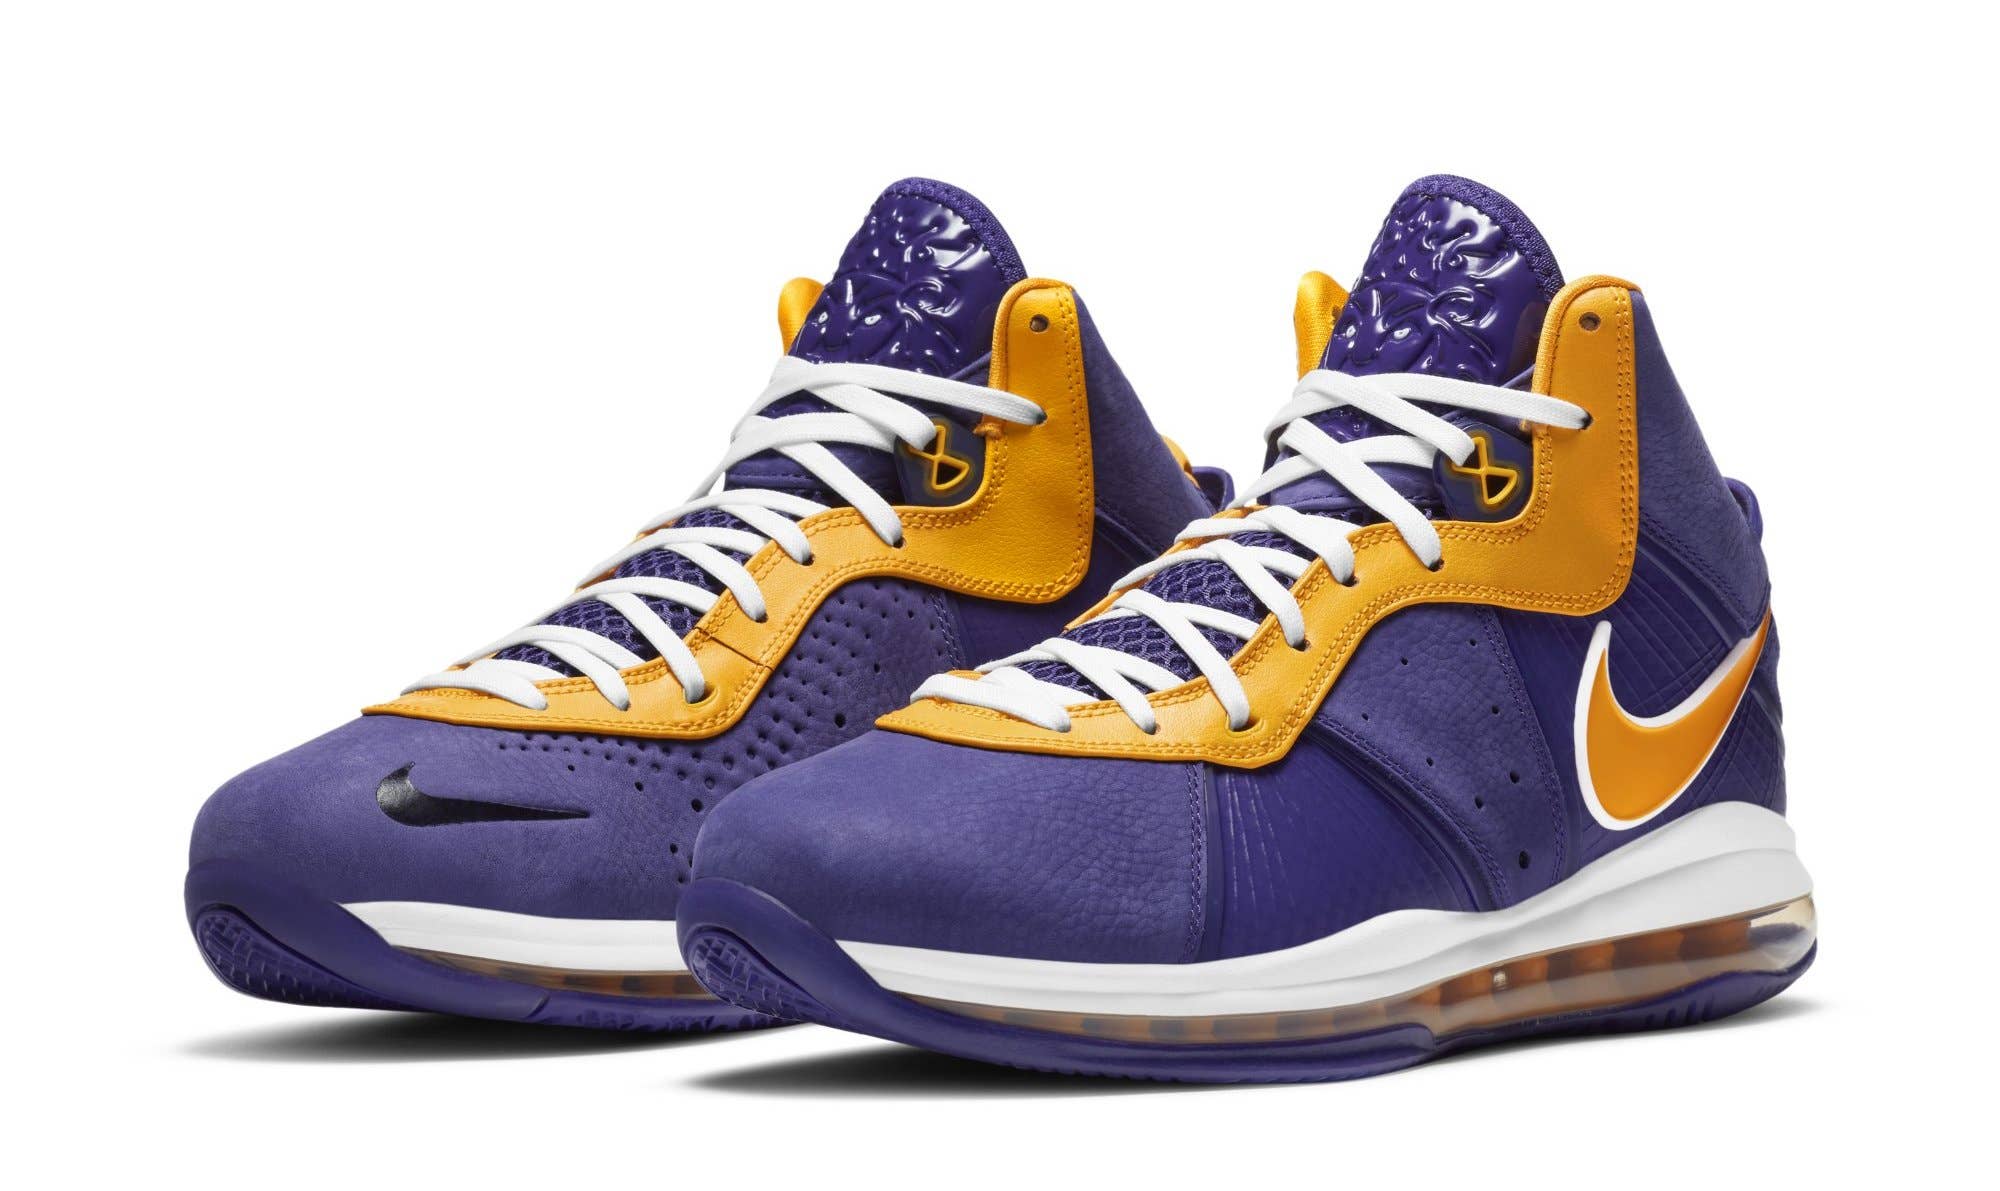 Nike LeBron 8 'Lakers' DC8380 500 (Pair)